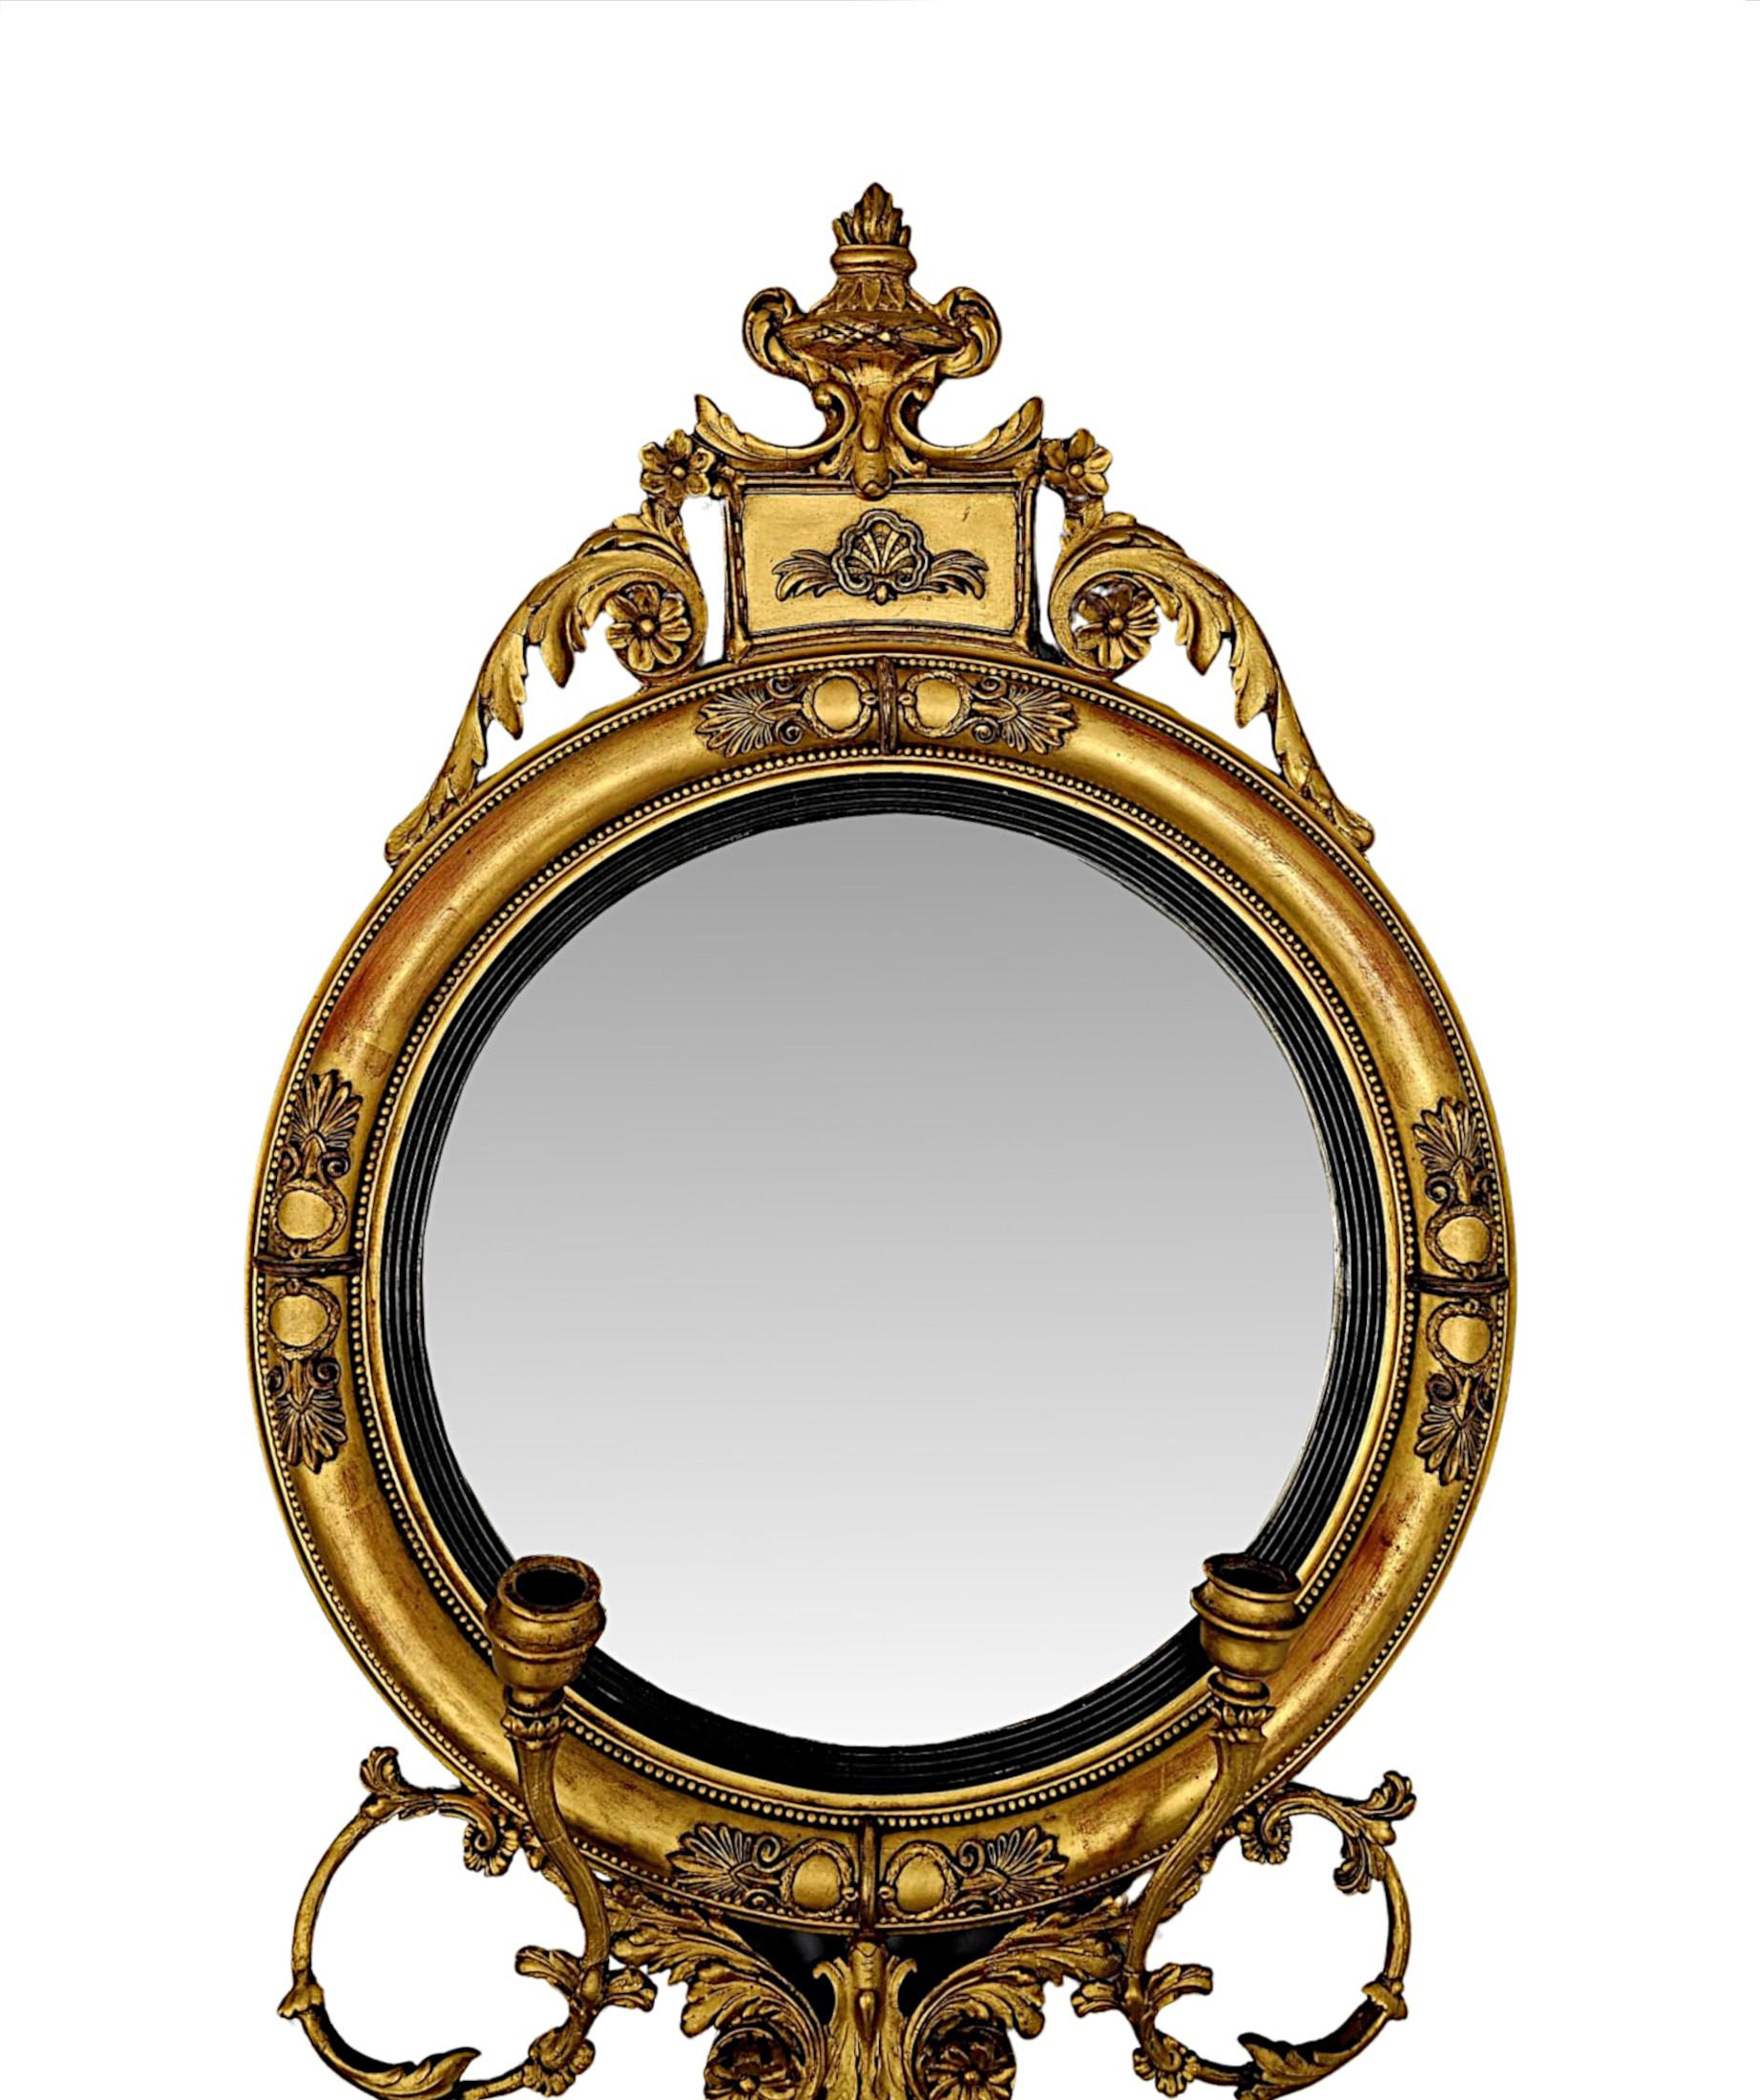 Eine sehr seltene und feine 19. Jahrhundert vergoldet girondole Halle oder Pier Spiegel von außergewöhnlicher Qualität.  Die konvexe Spiegelglasplatte in runder Form befindet sich in einem atemberaubenden handgeschnitzten, geformten und geriffelten